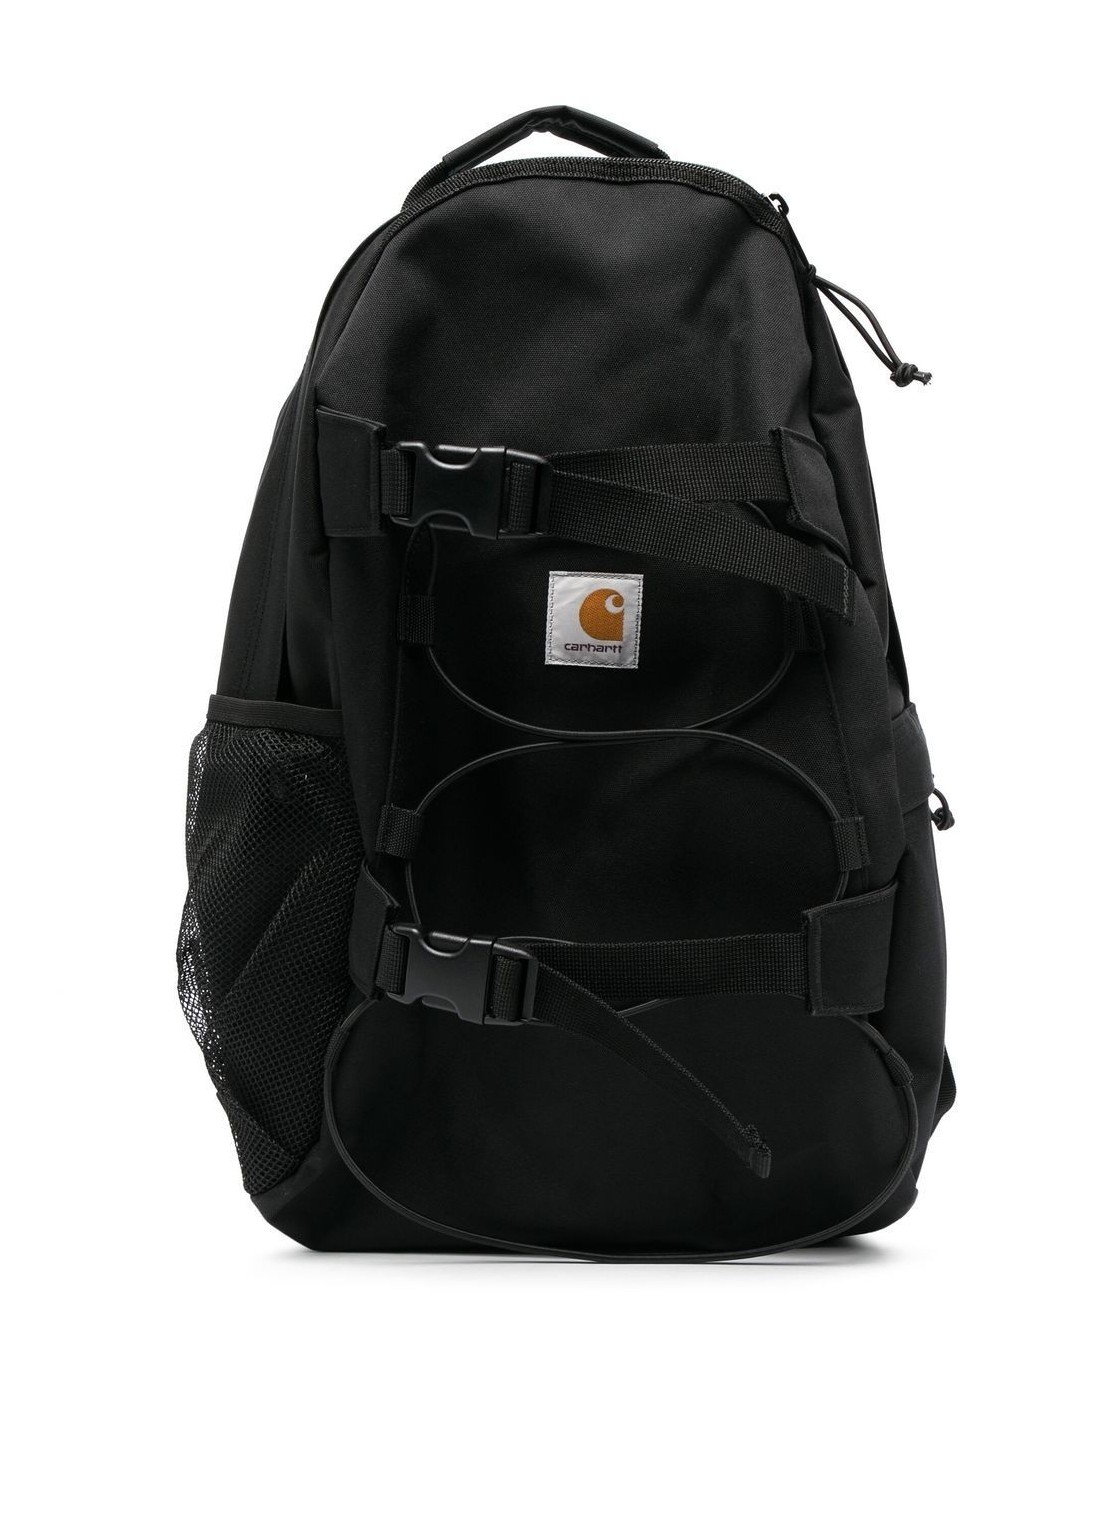 Viaje carhartt luggage man kickflip backpack i031468 89xx talla T/U
 